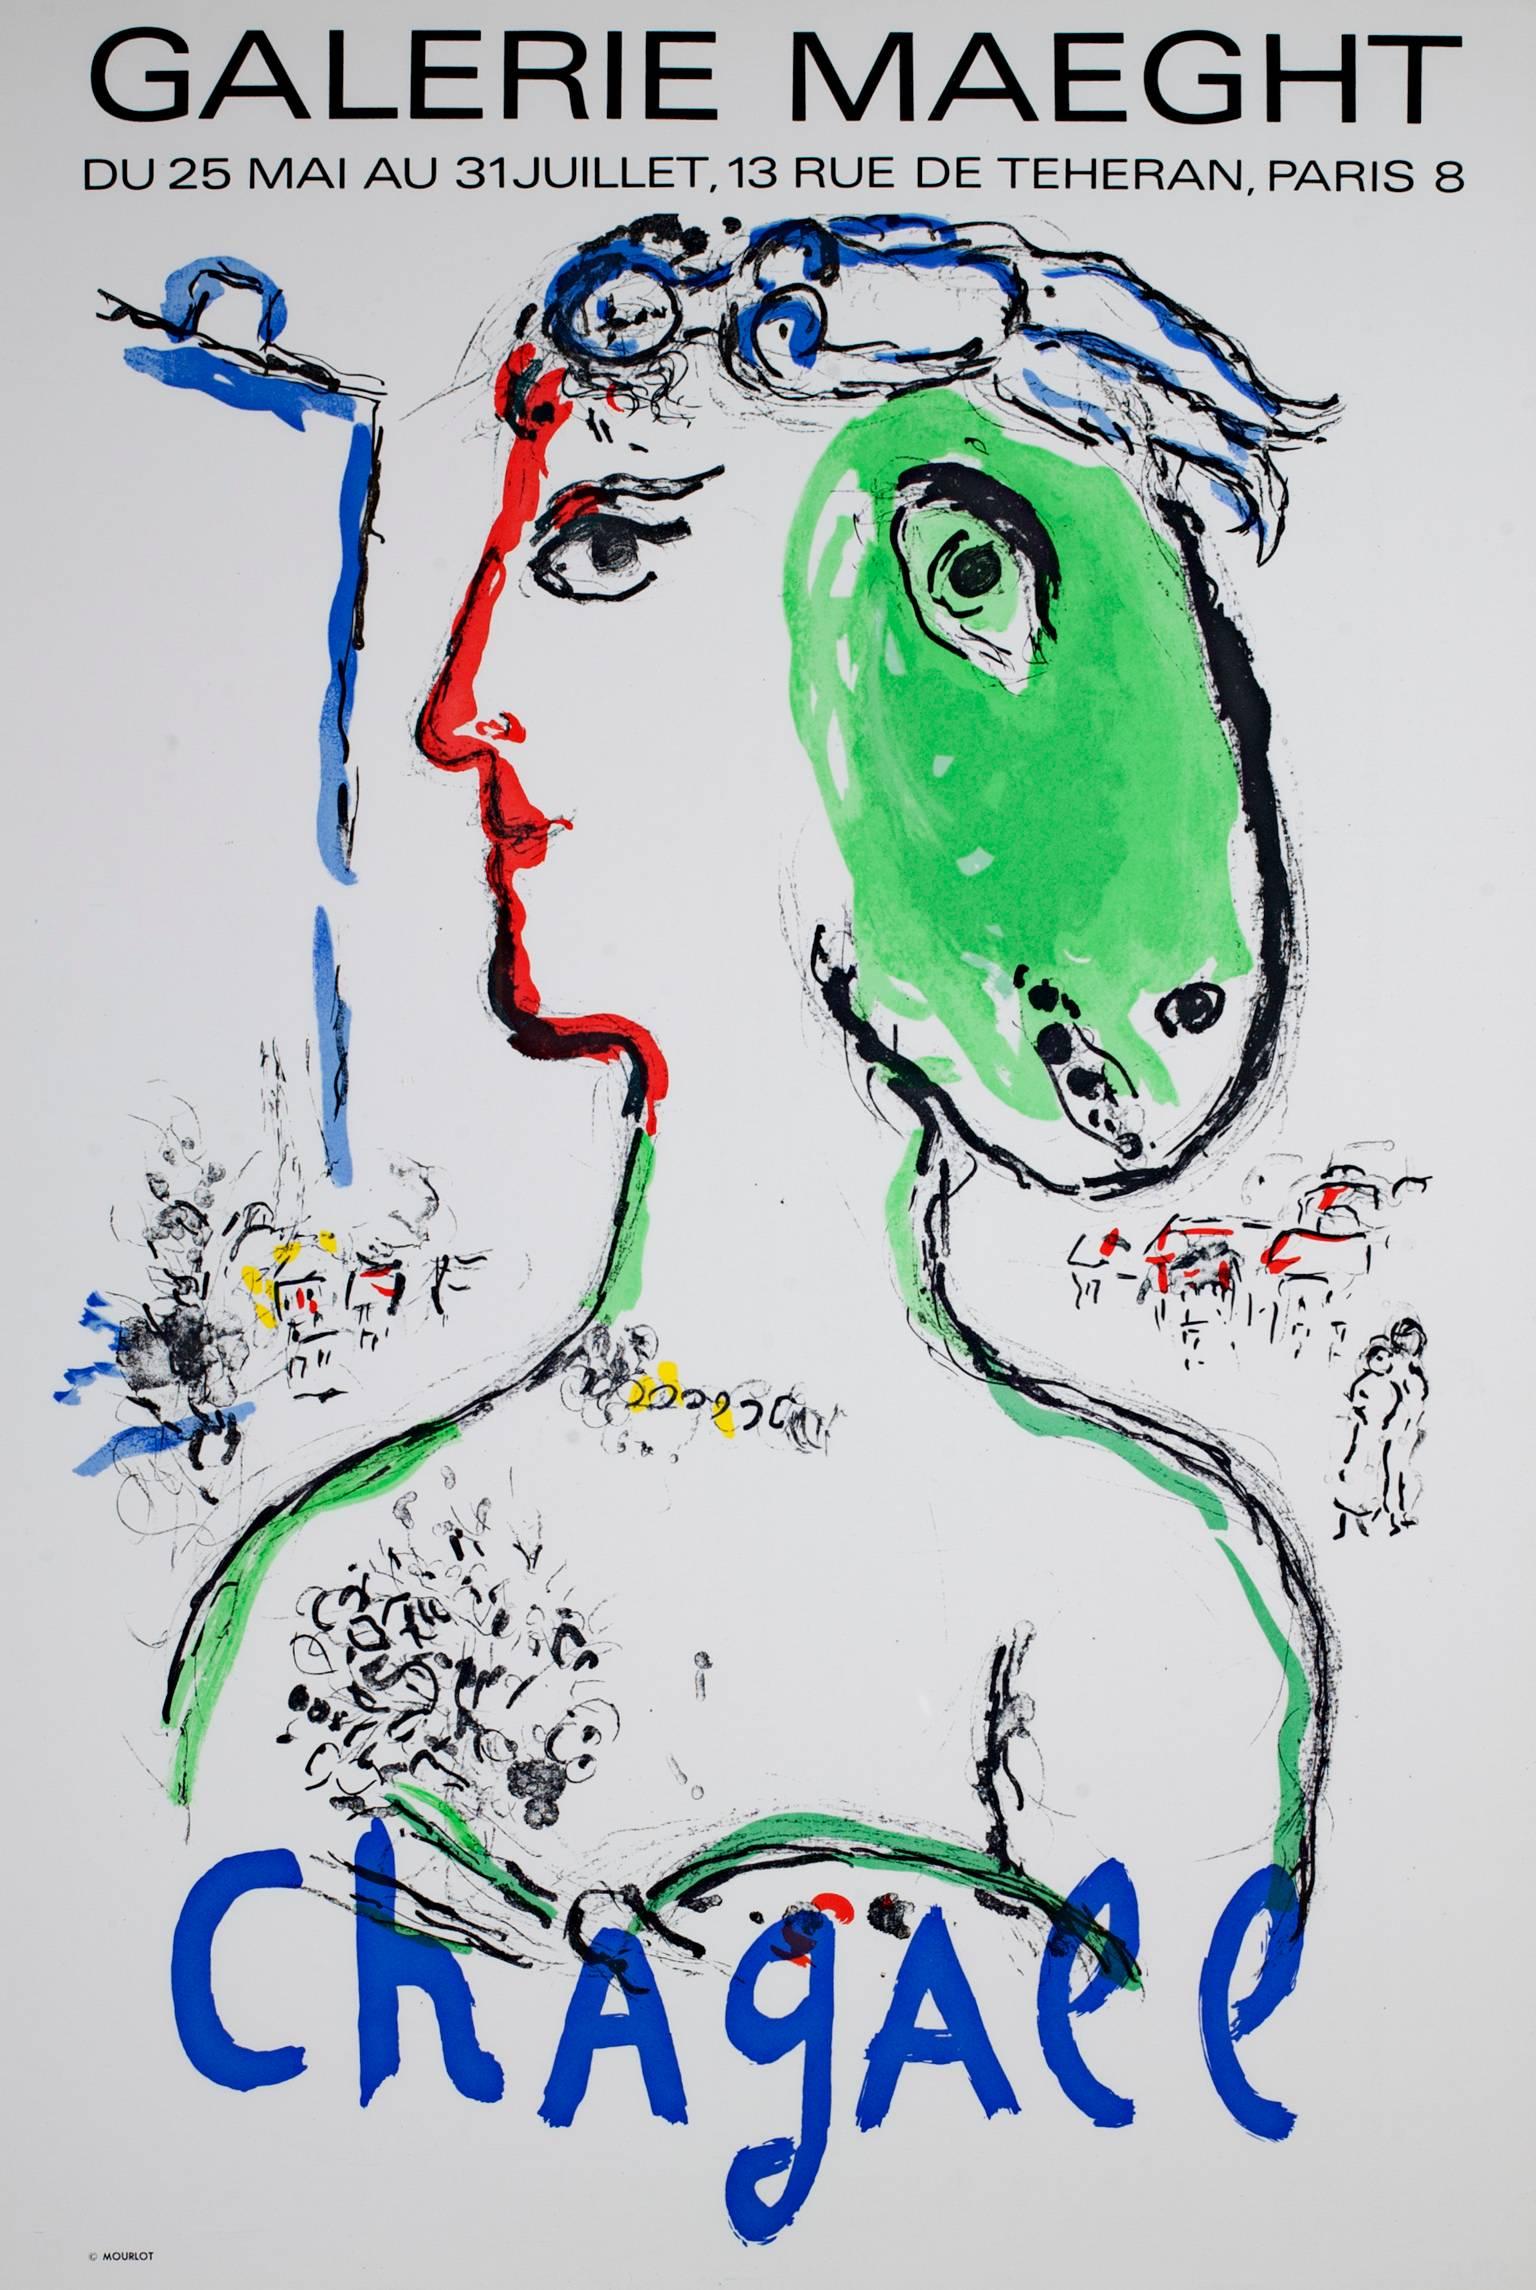 « L'Artist Phoenix Poster », une affiche de lithographie colorée originale de Marc Chagall